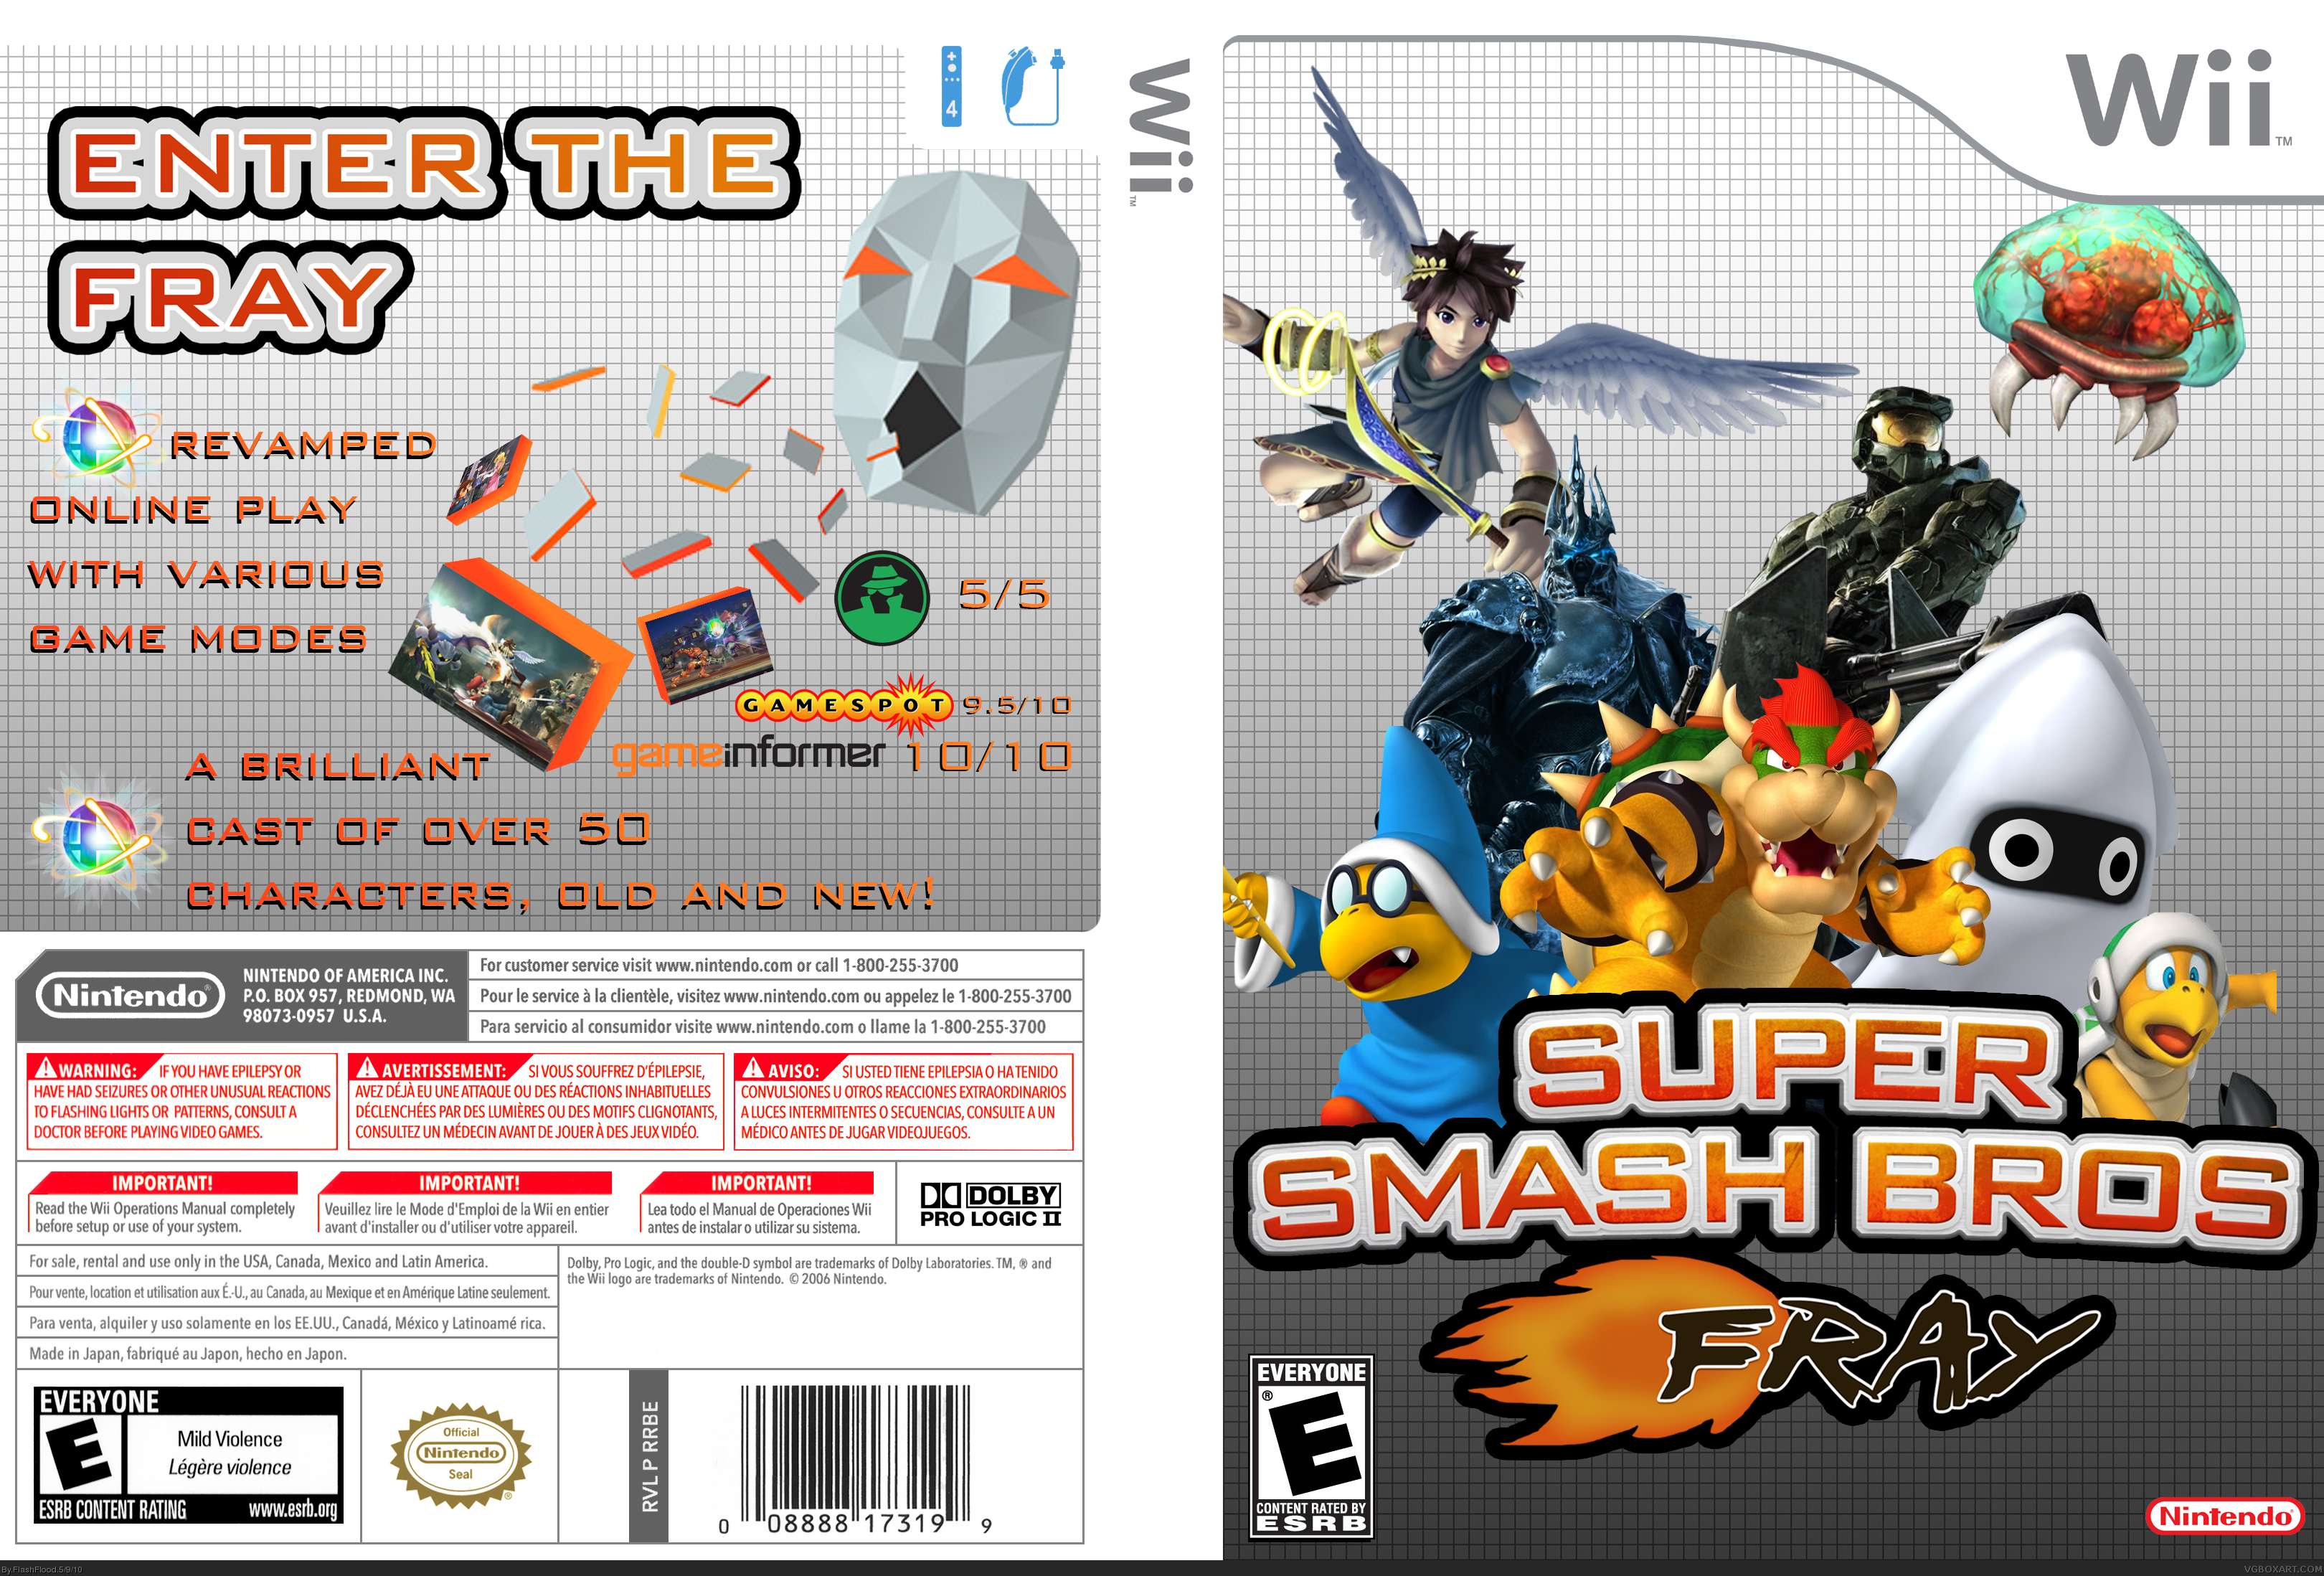 Super Smash Bros. Fray box cover